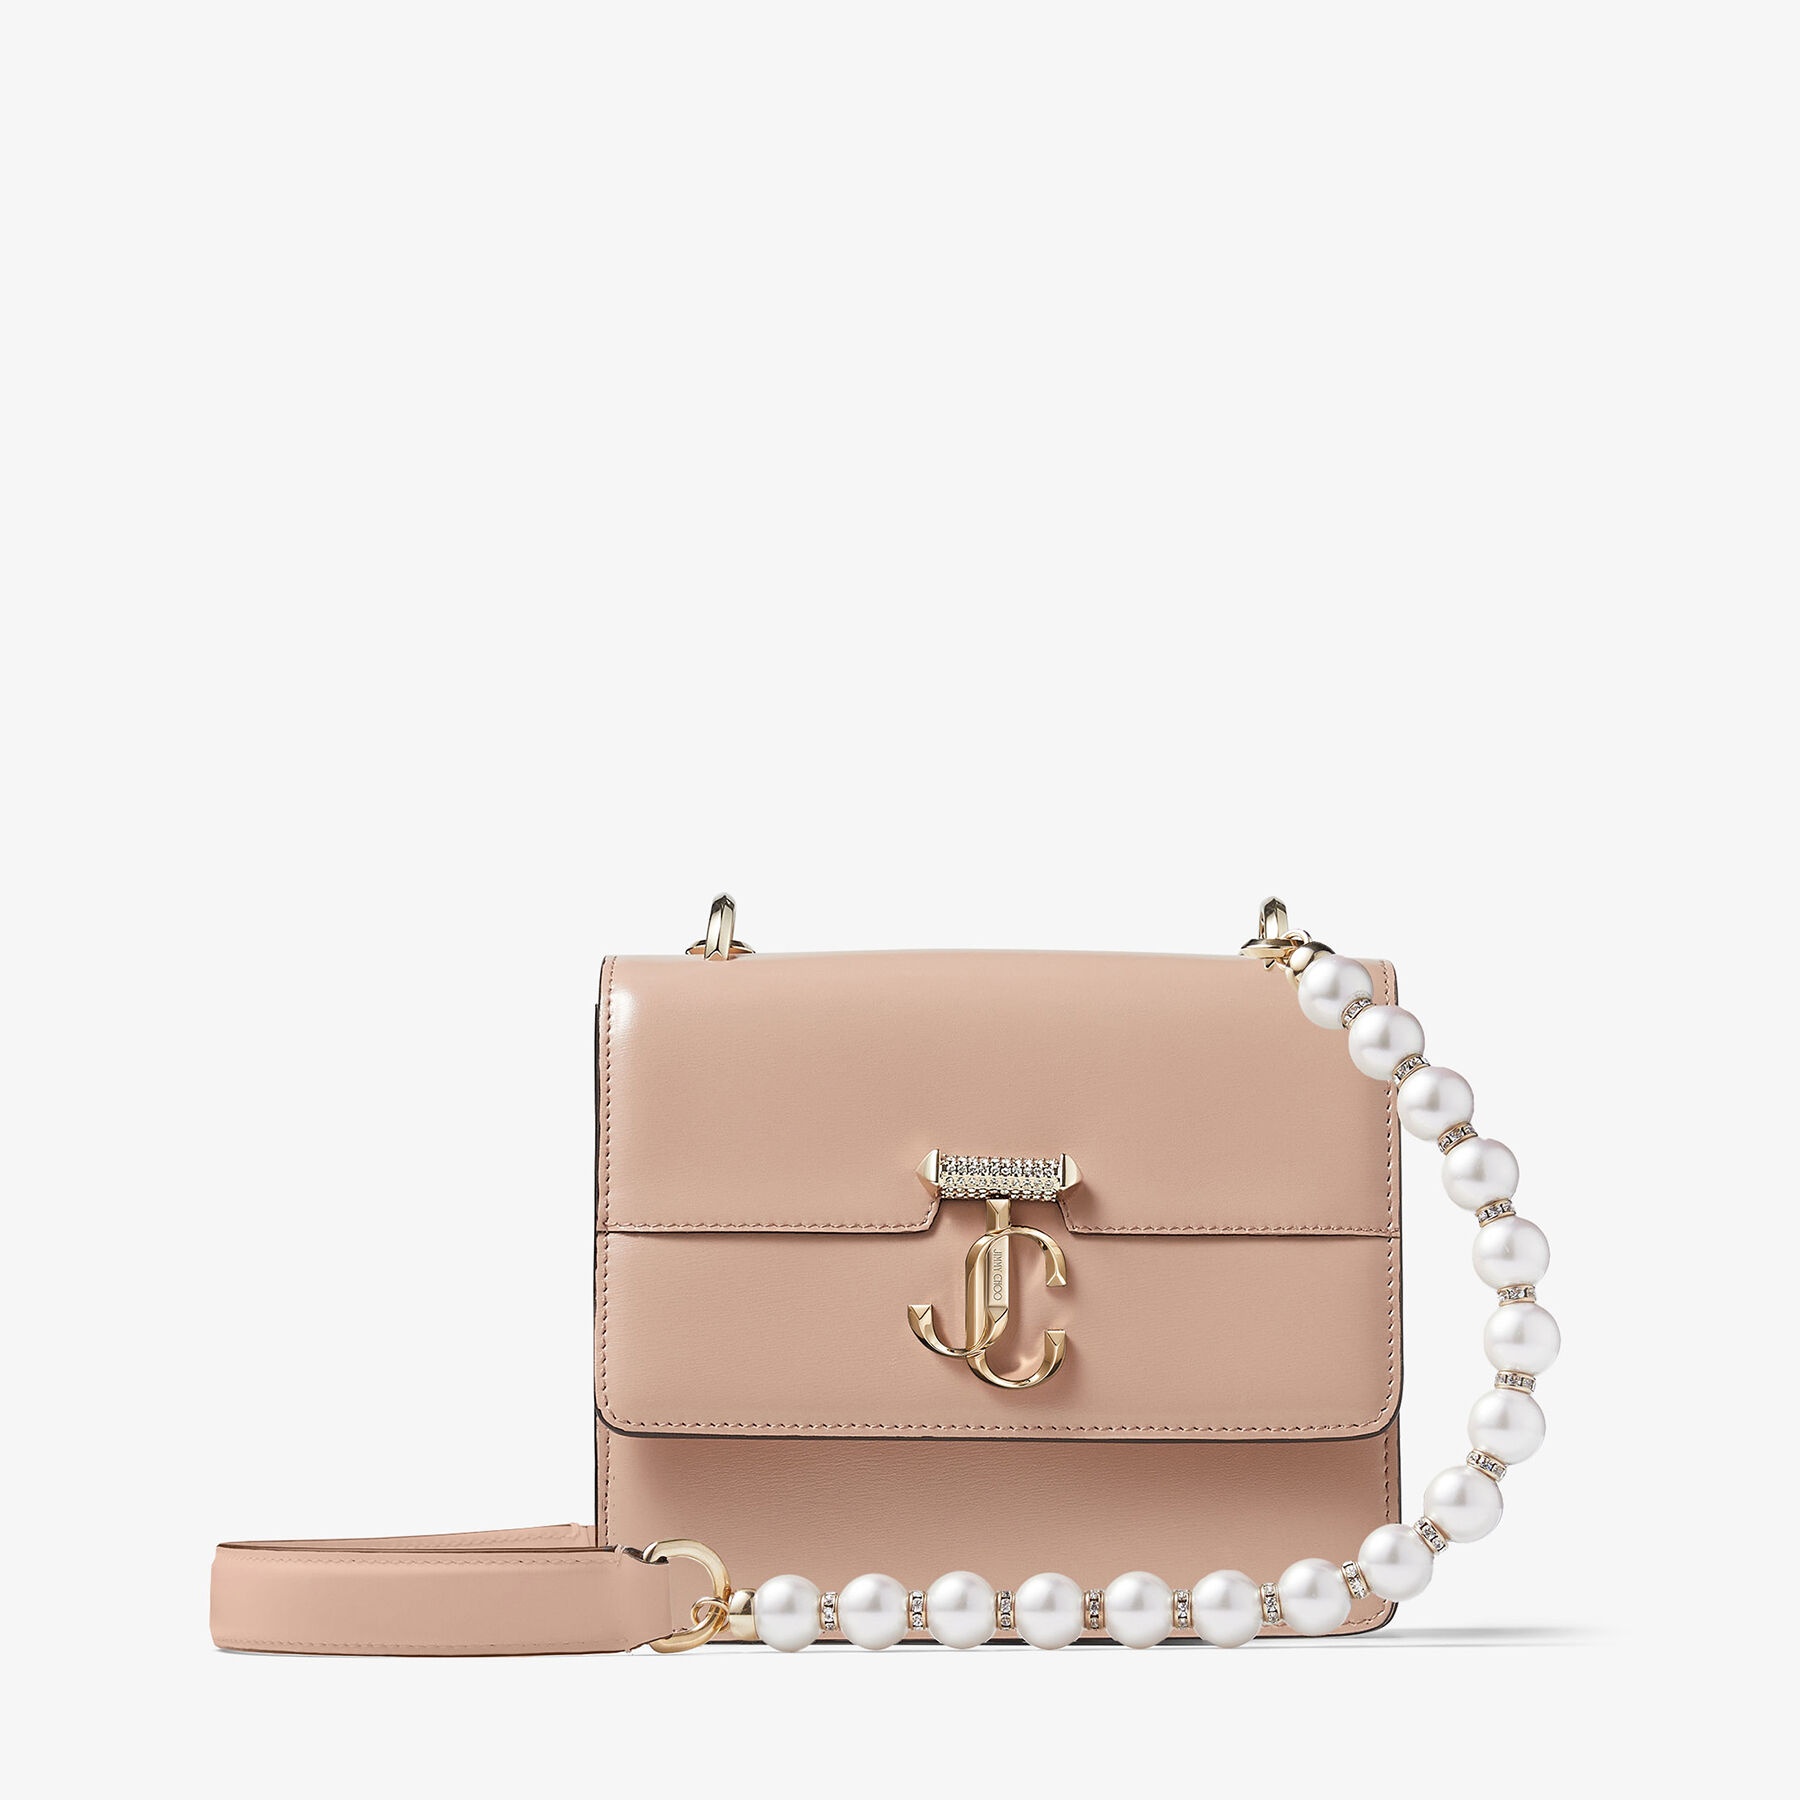 Varenne Quad XS
Ballet Pink Box Leather Shoulder Bag with Pearl Strap - 1